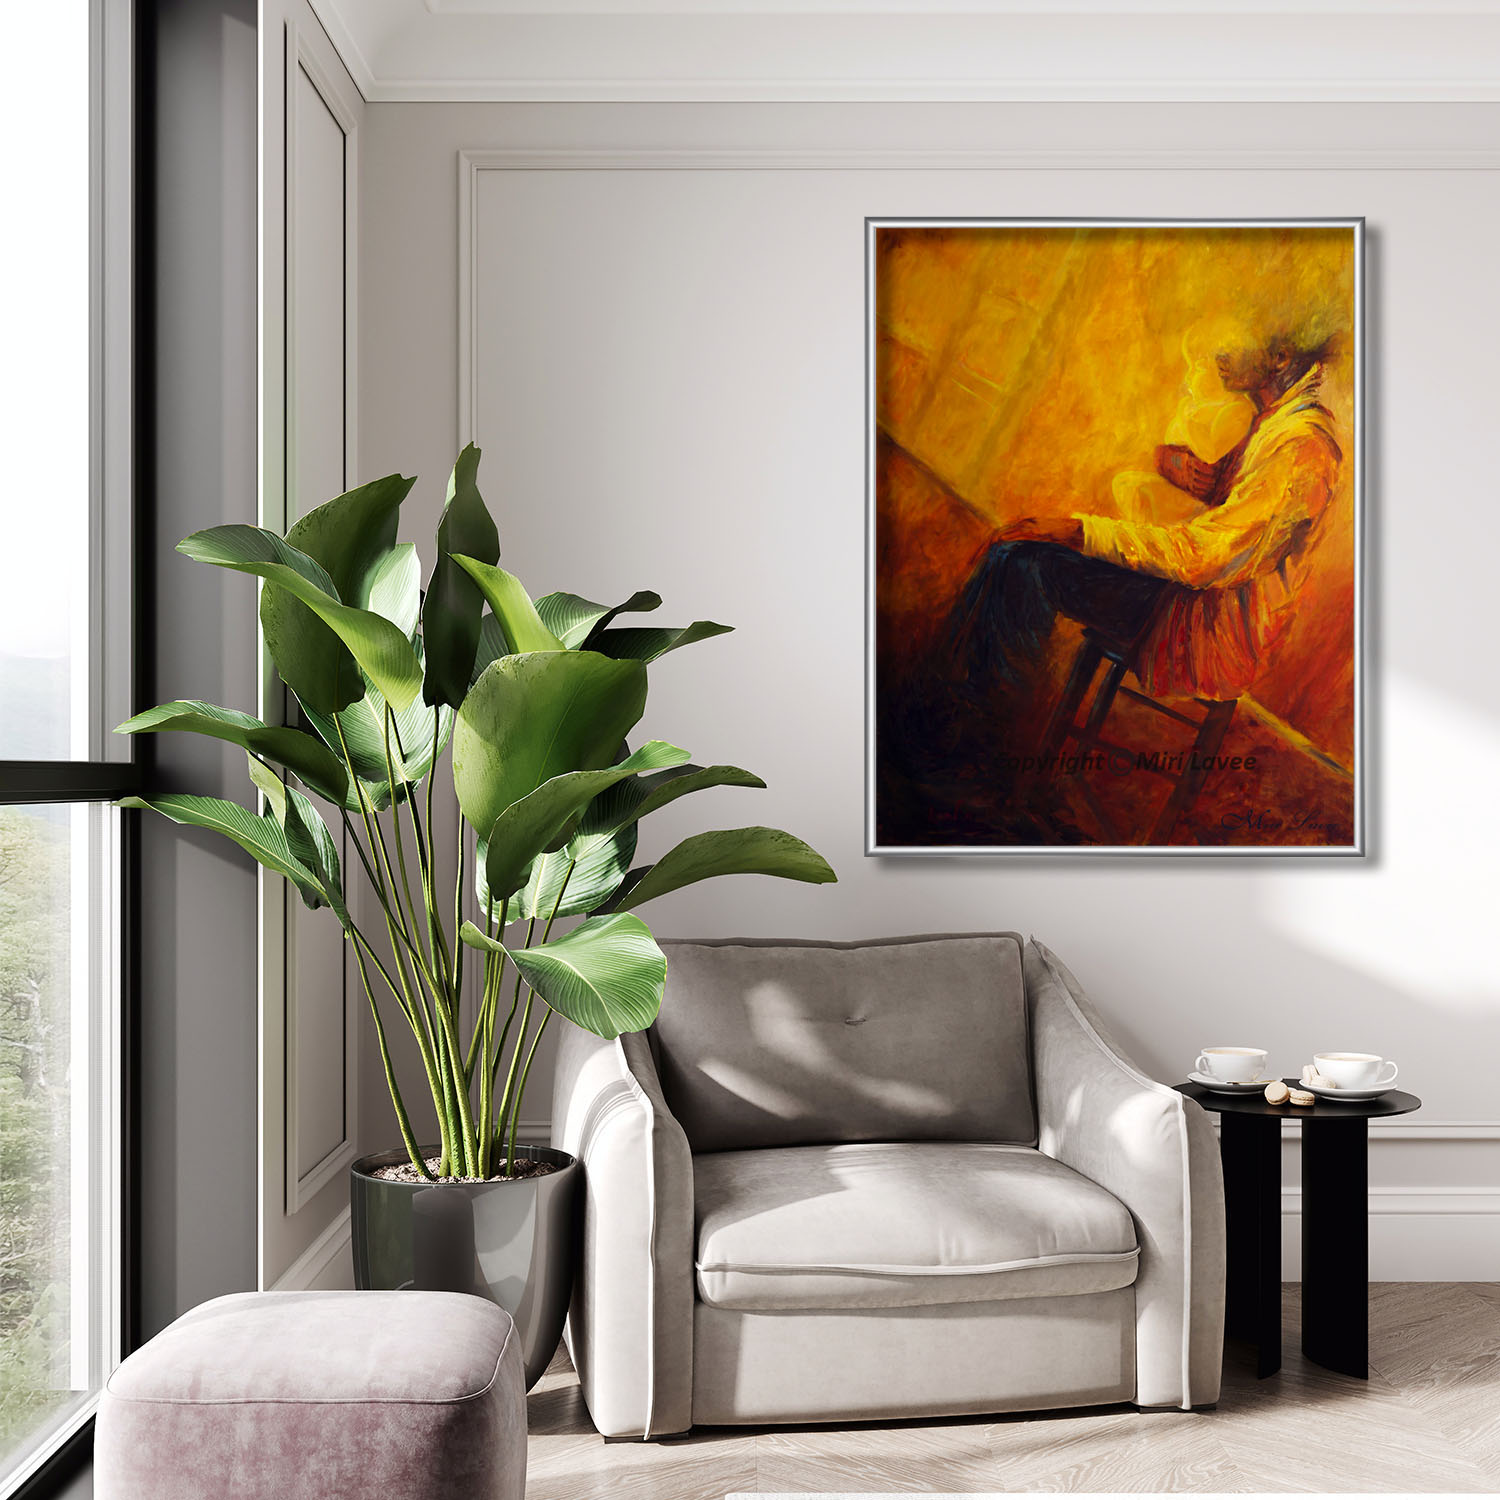 ציור אבא ותינוק בצבעים חמים אדום כתום וצהוב תמונה בפינת ישיבה מעל כורסא נוחה ציירת מירי לביא